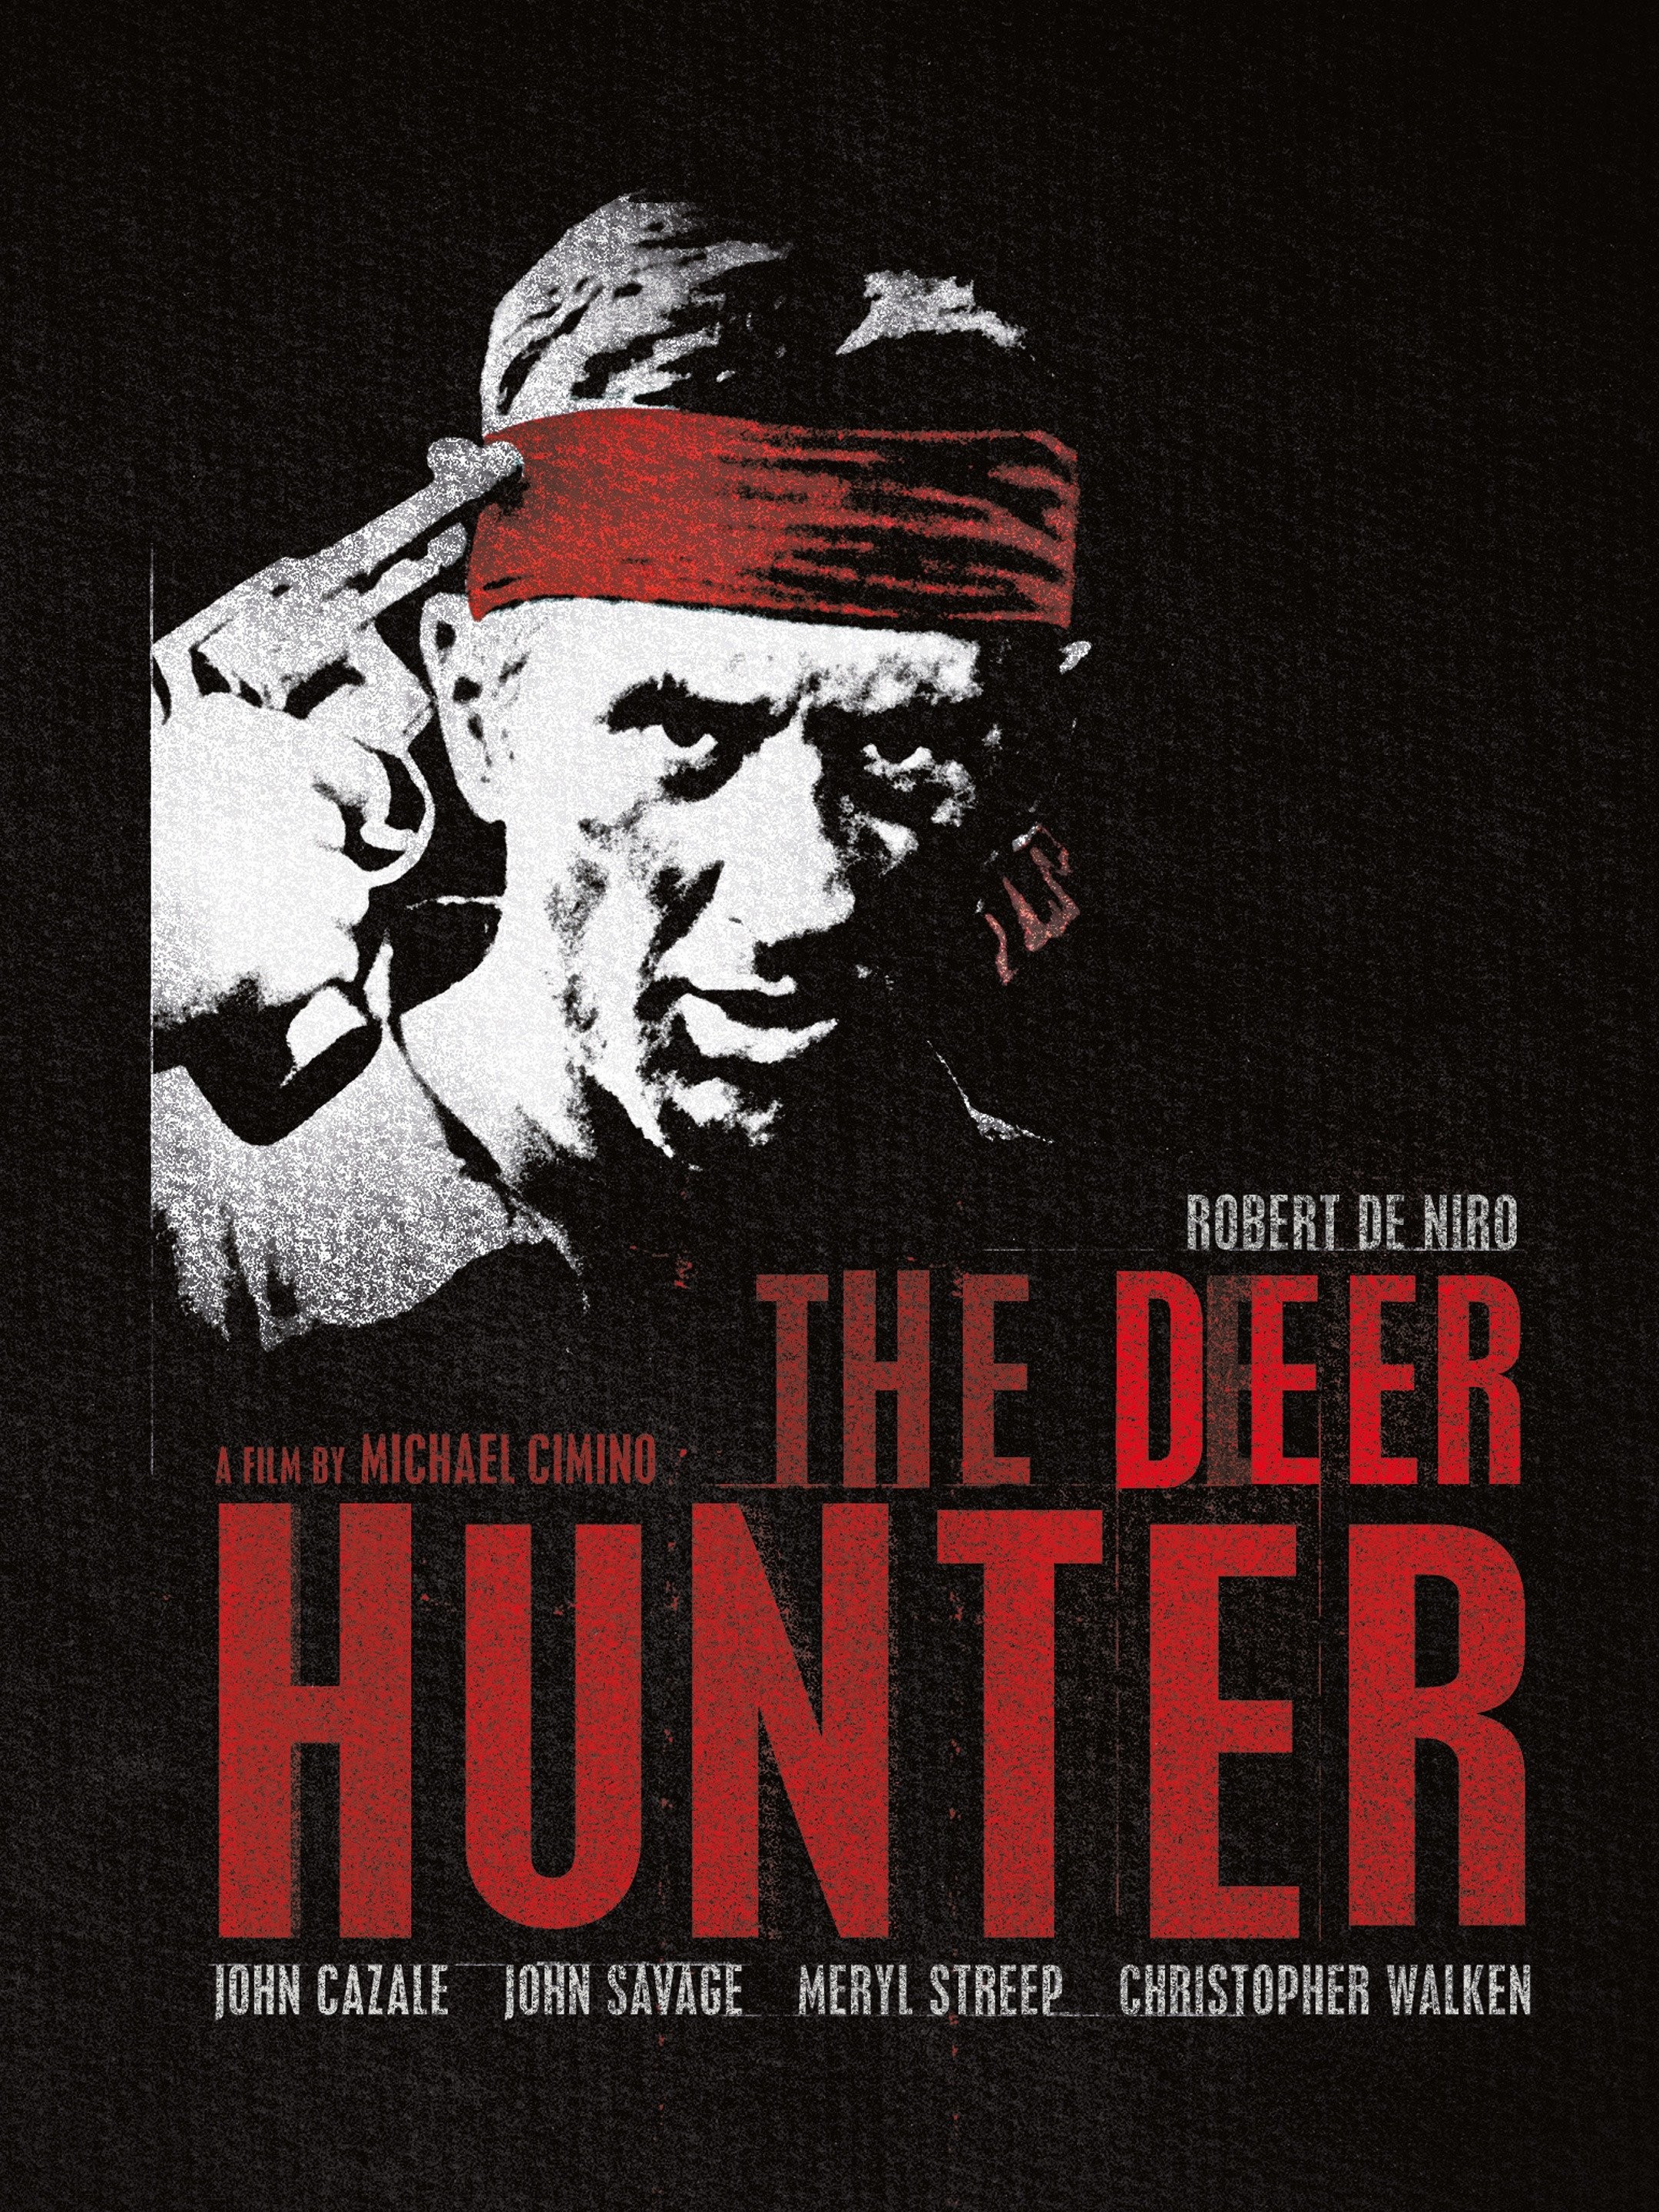 Friday Hunt – Hunter X Hunter challenge week 17 - I drink and